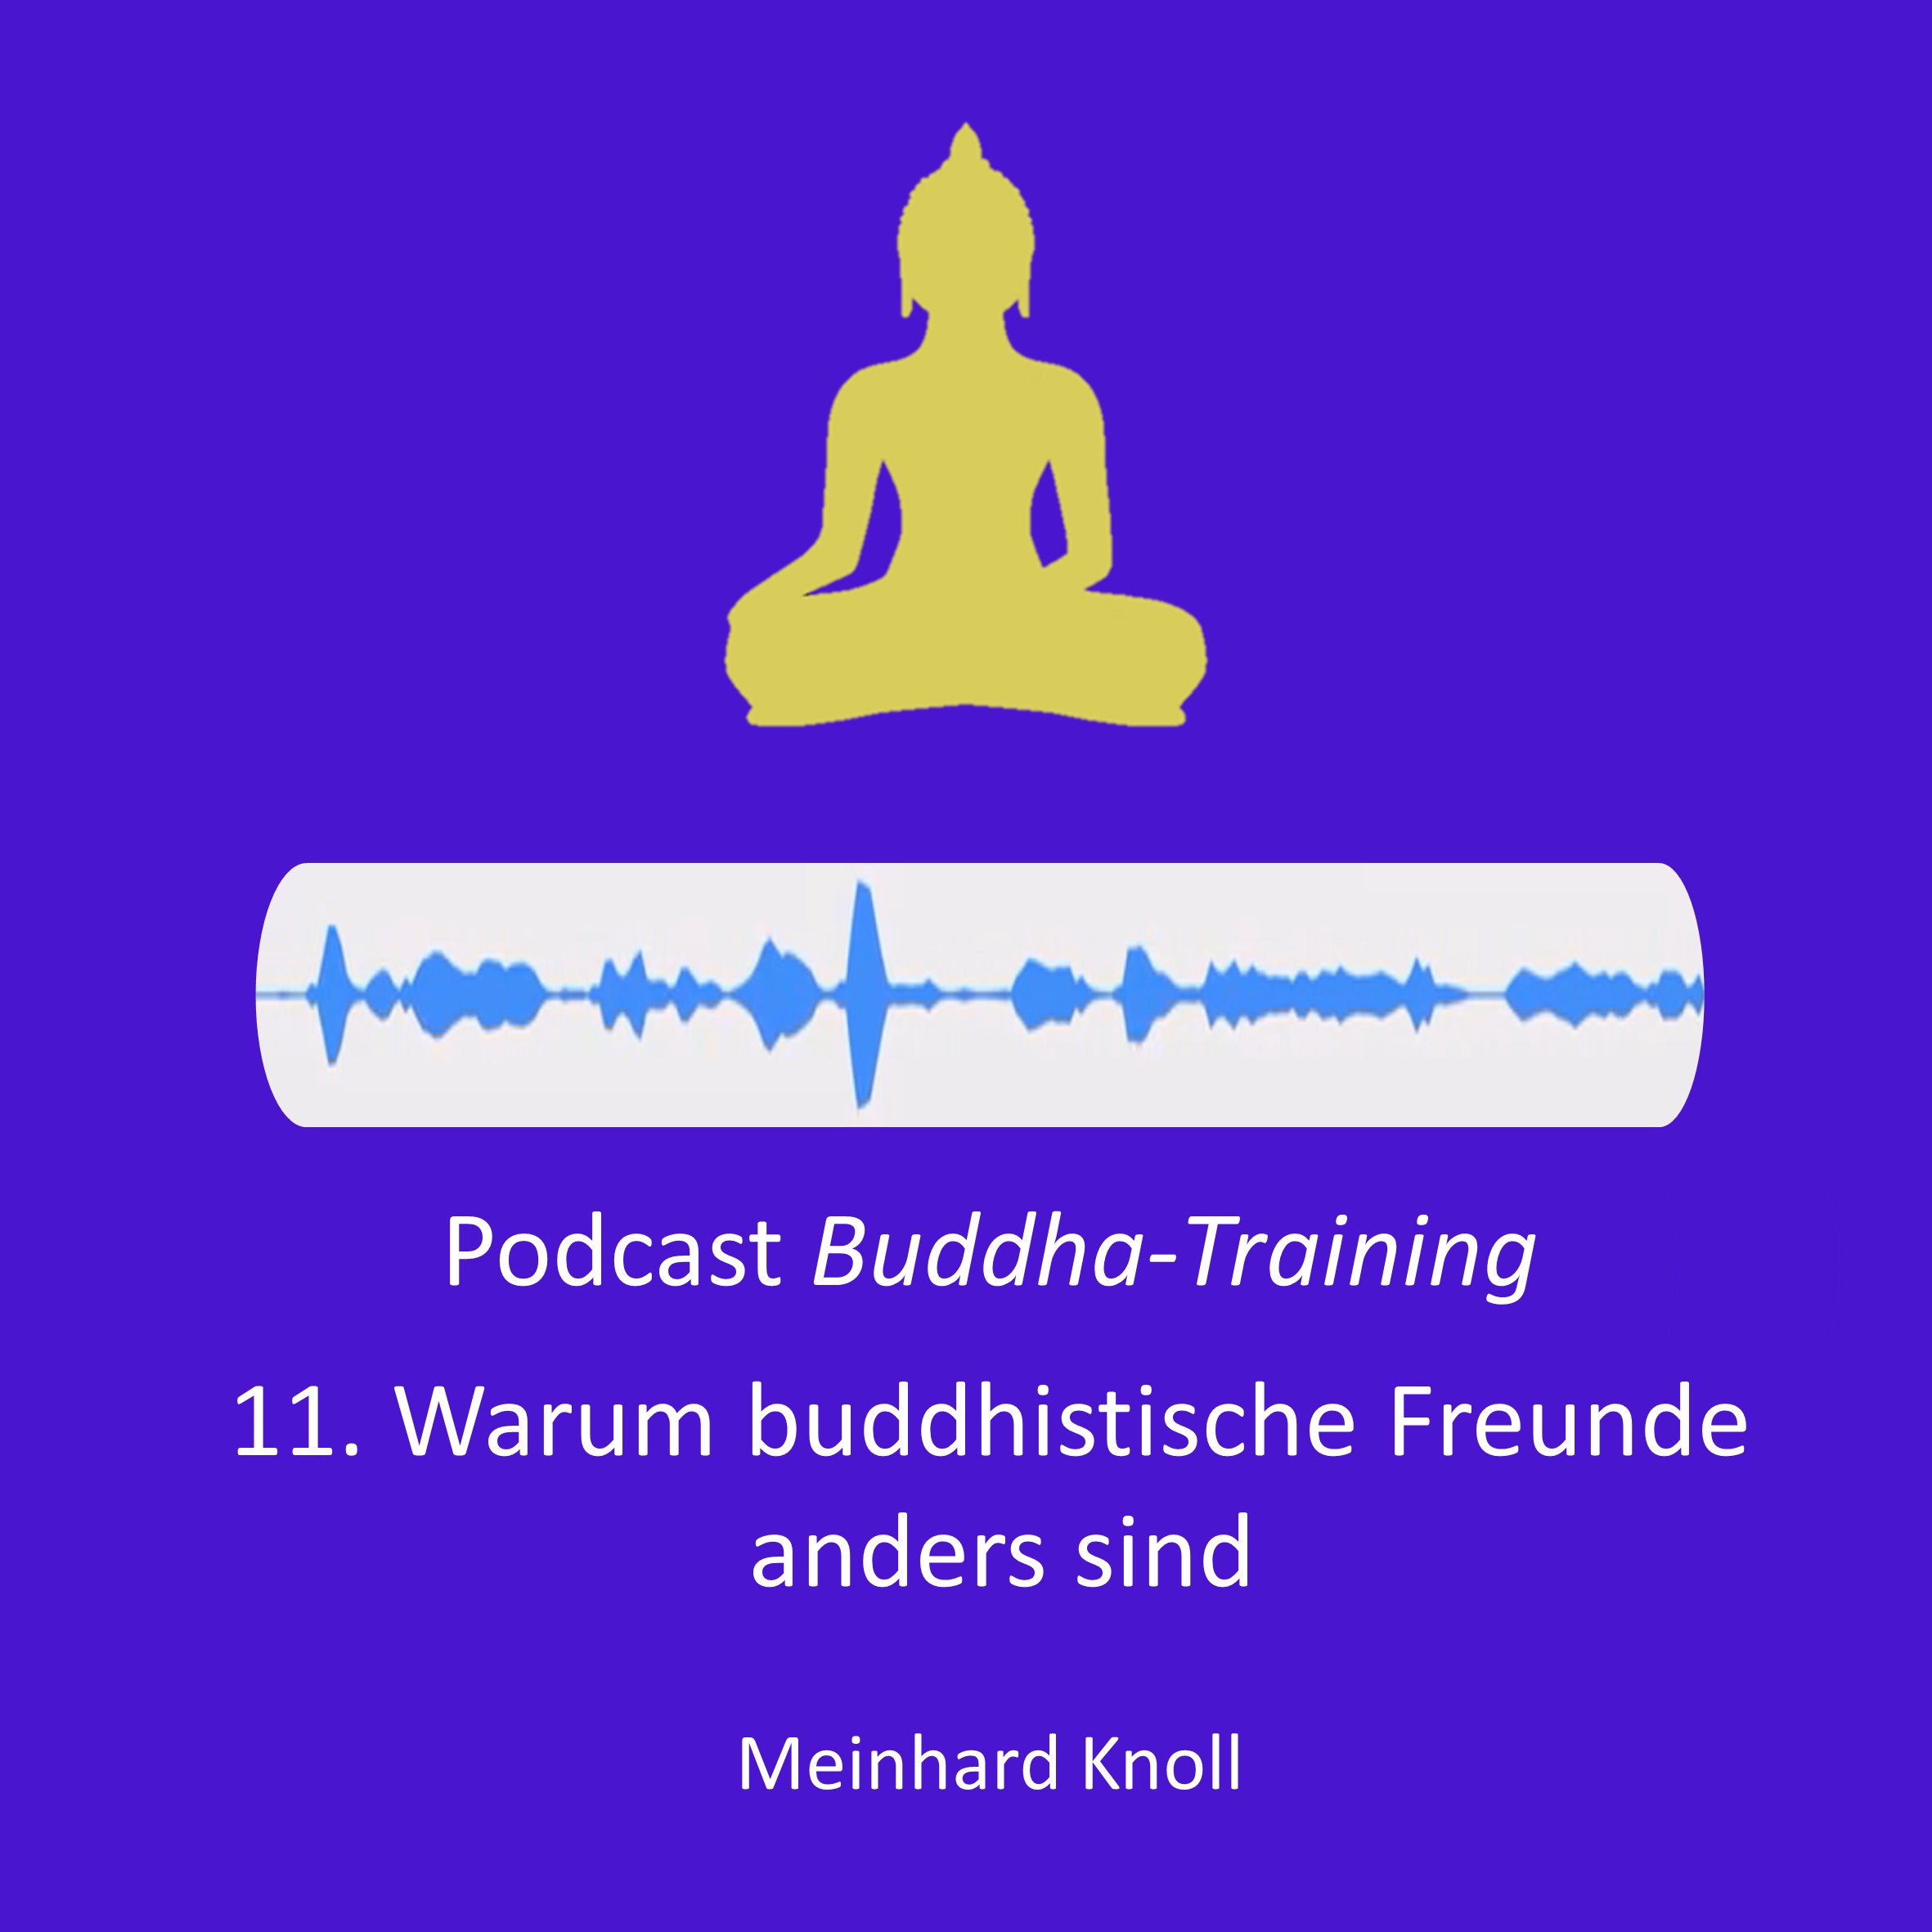 11. Warum buddhistische Freunde anders sind